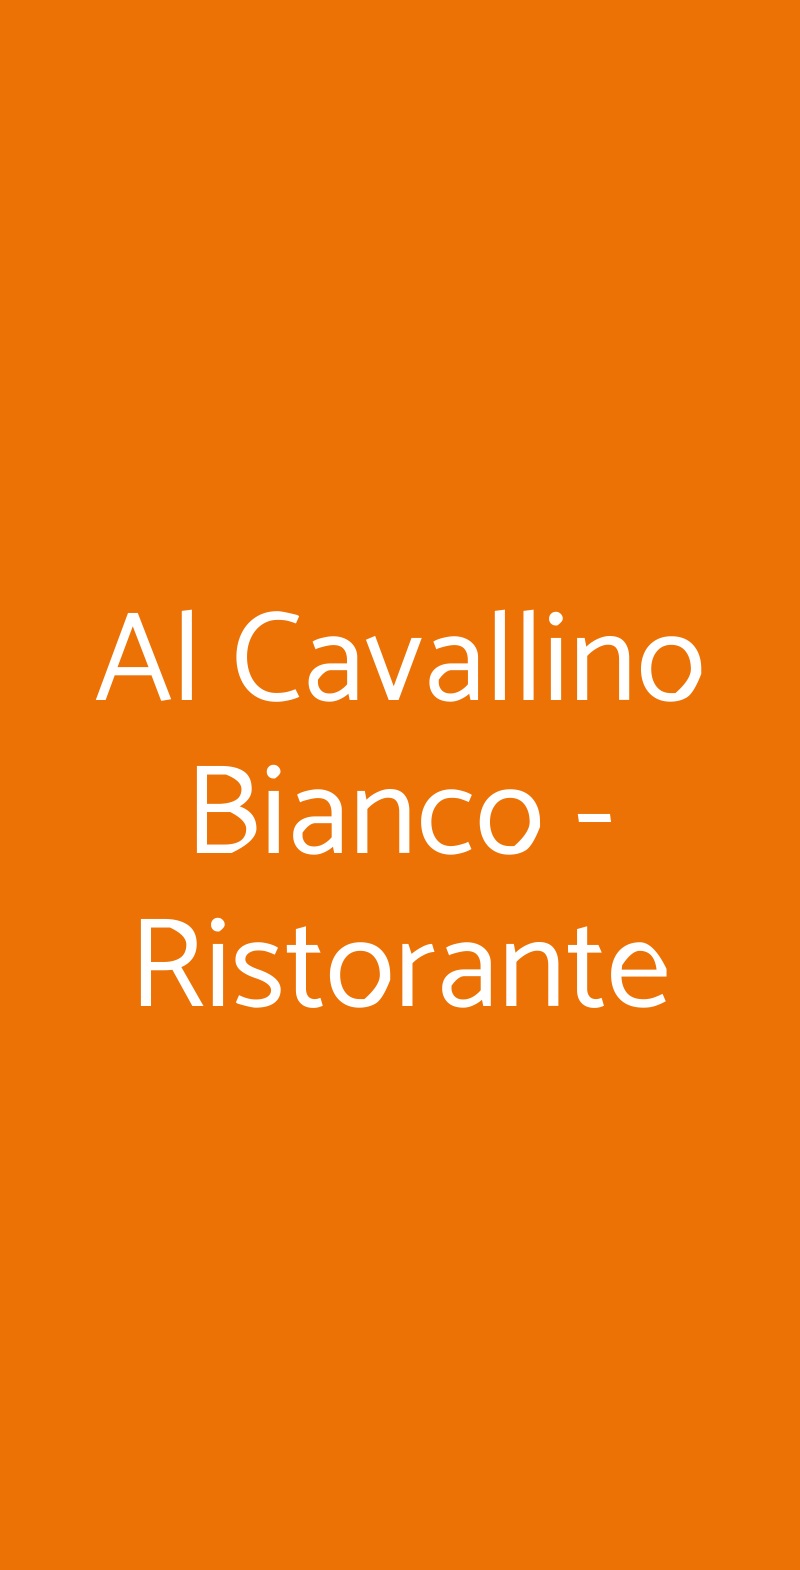 Al Cavallino Bianco - Ristorante Roma menù 1 pagina